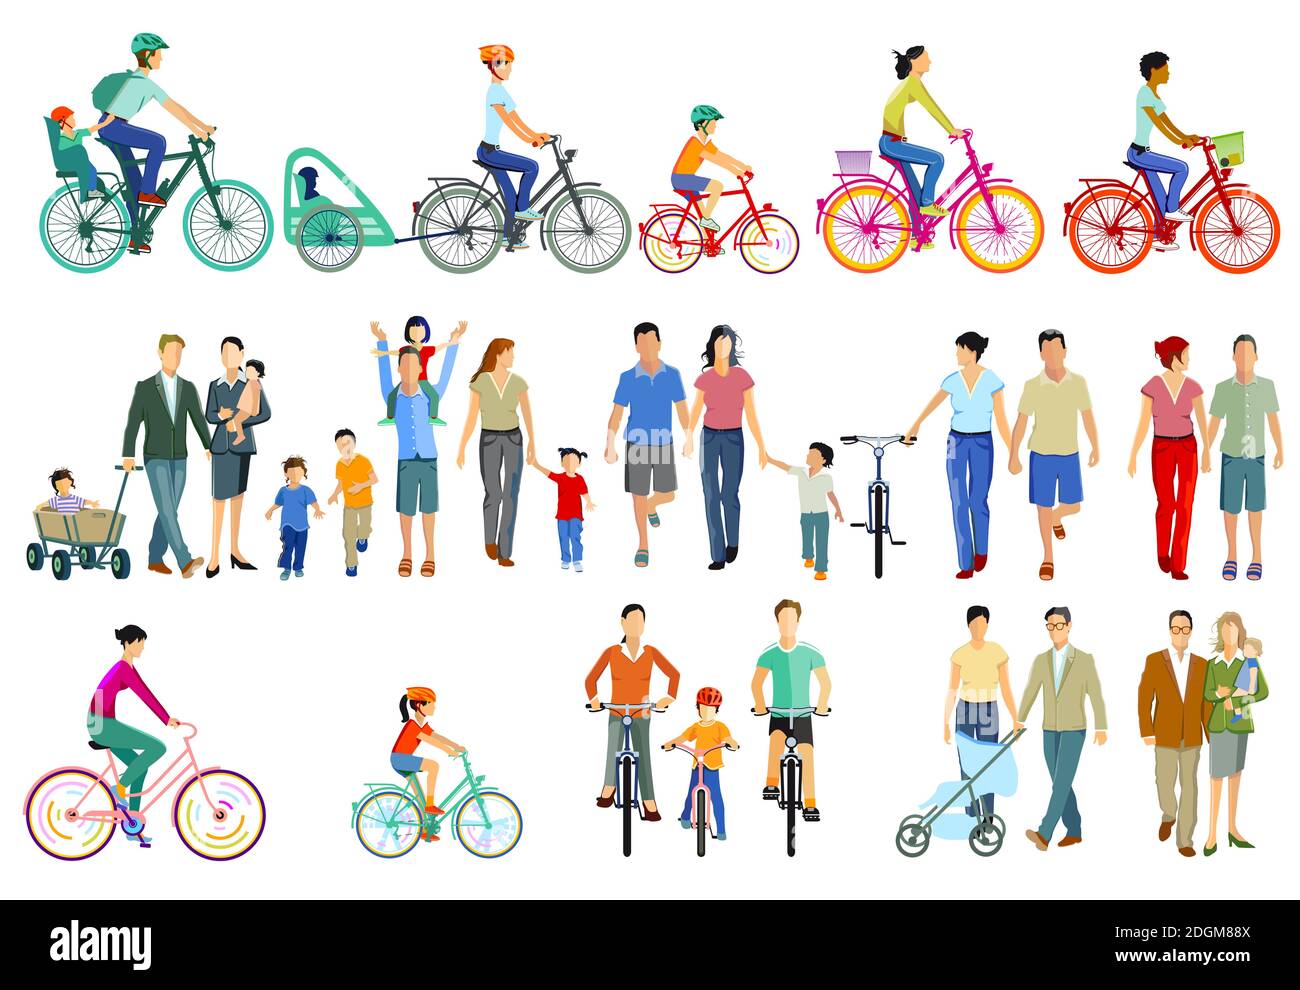 Familien, Radfahrer und Fußgänger Illustration Stock Vektor